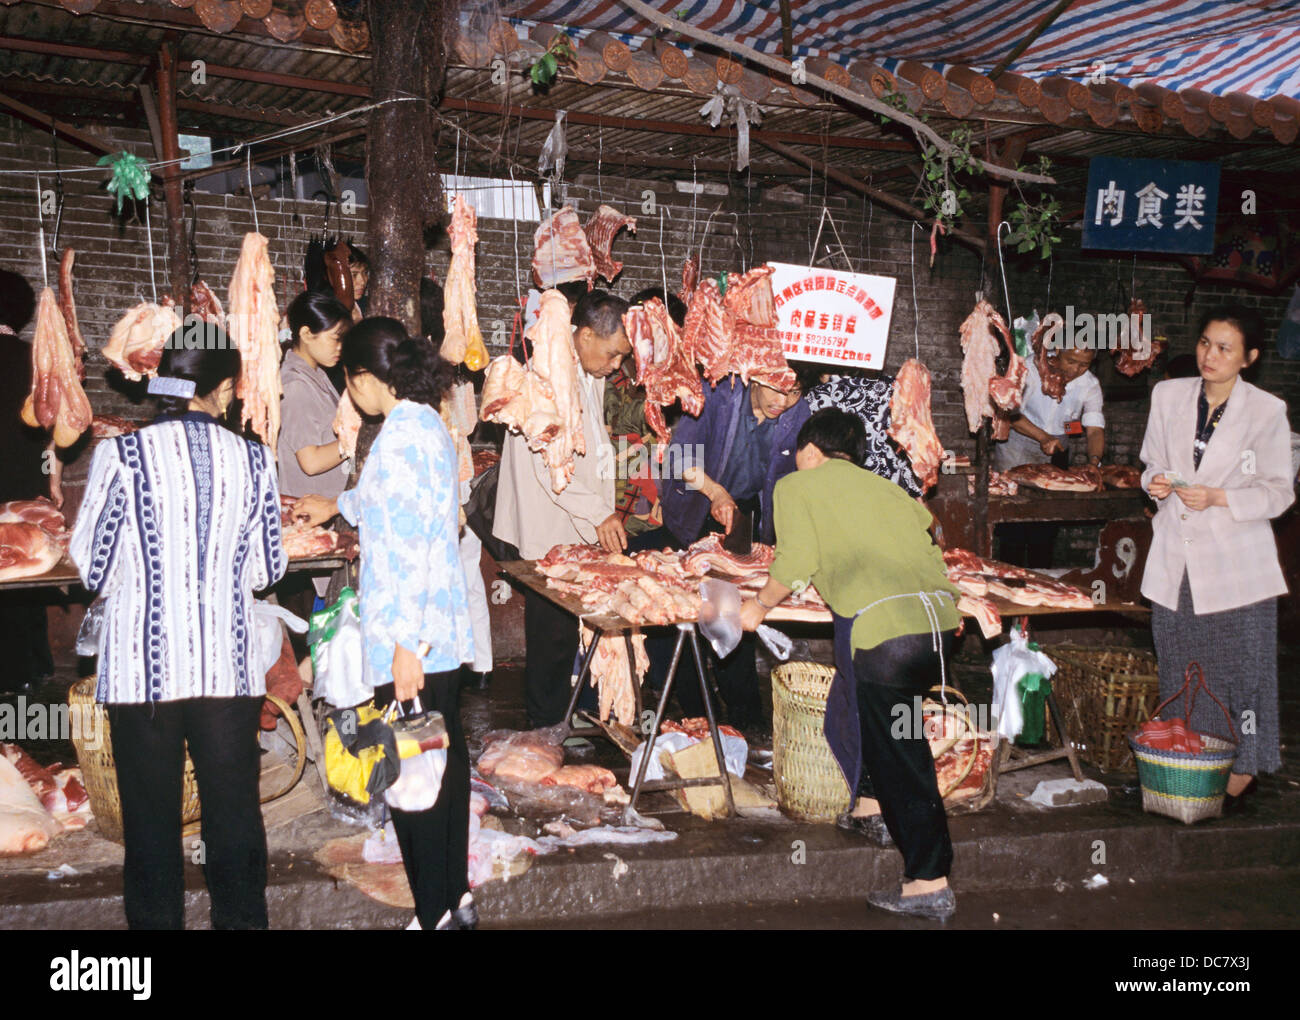 Street market, butcher shop, Wanxian, China 990601 1431 Stock Photo